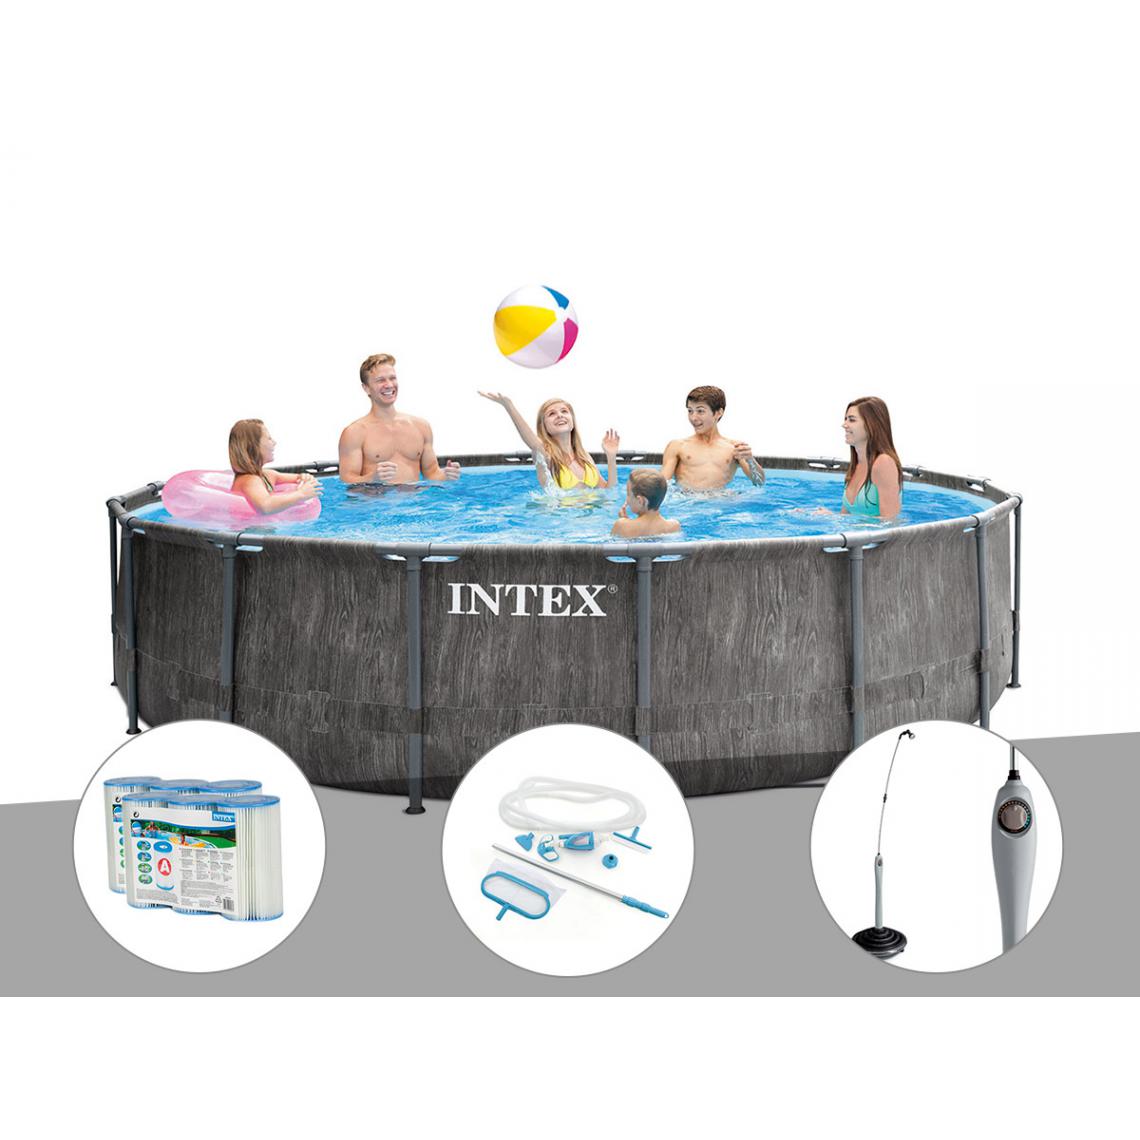 Intex - Kit piscine tubulaire Intex Baltik ronde 5,49 x 1,22 m + 6 cartouches de filtration + Kit d'entretien + Douche solaire - Piscine Tubulaire